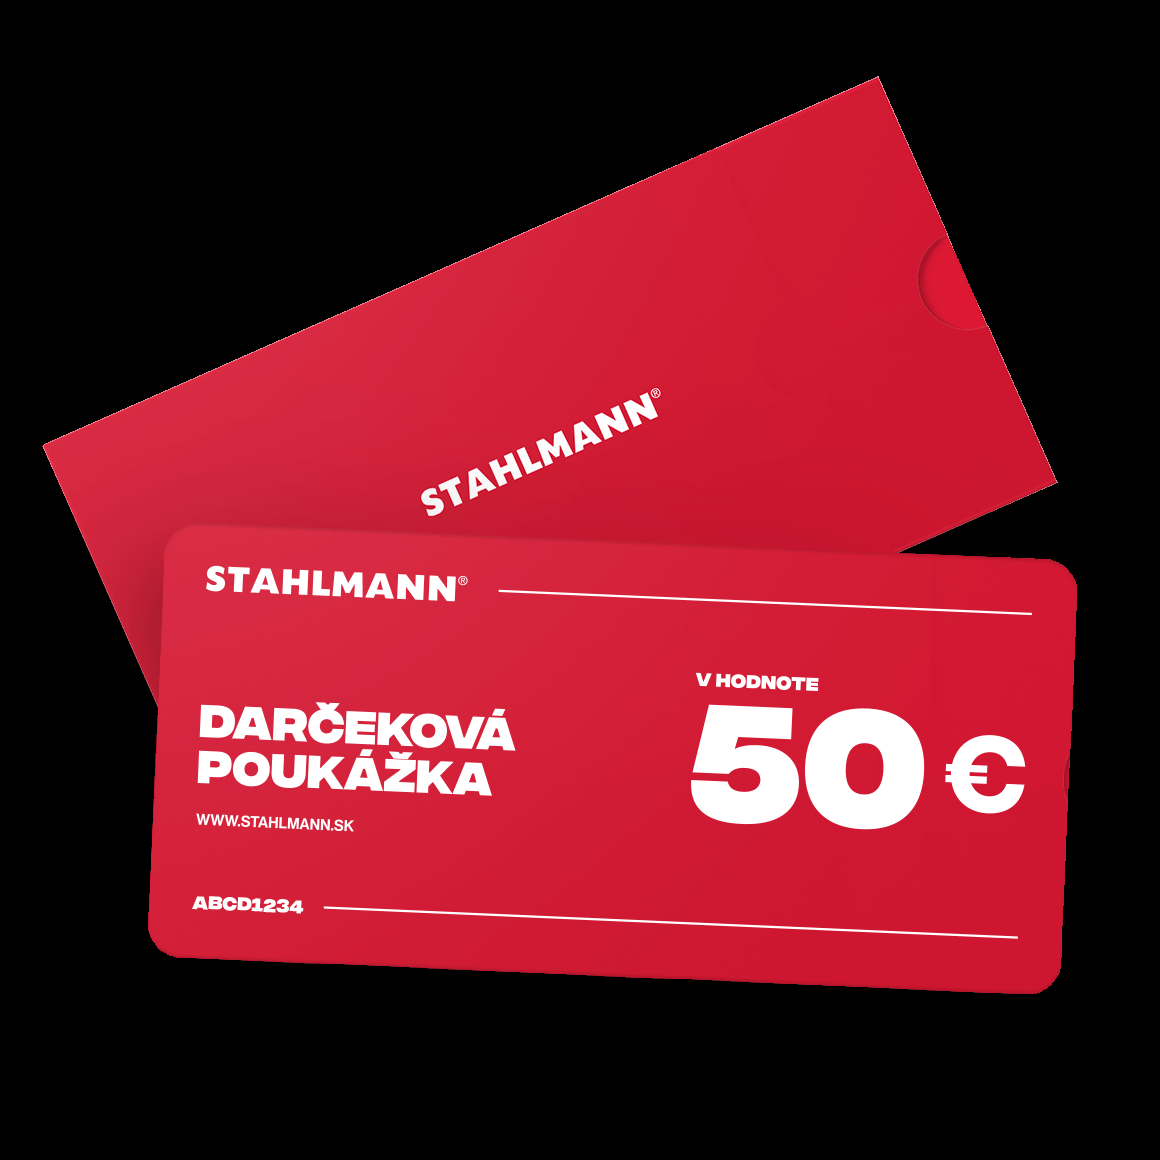 STAHLMANN 50€ Darčeková poukážka VOUCHER 50€